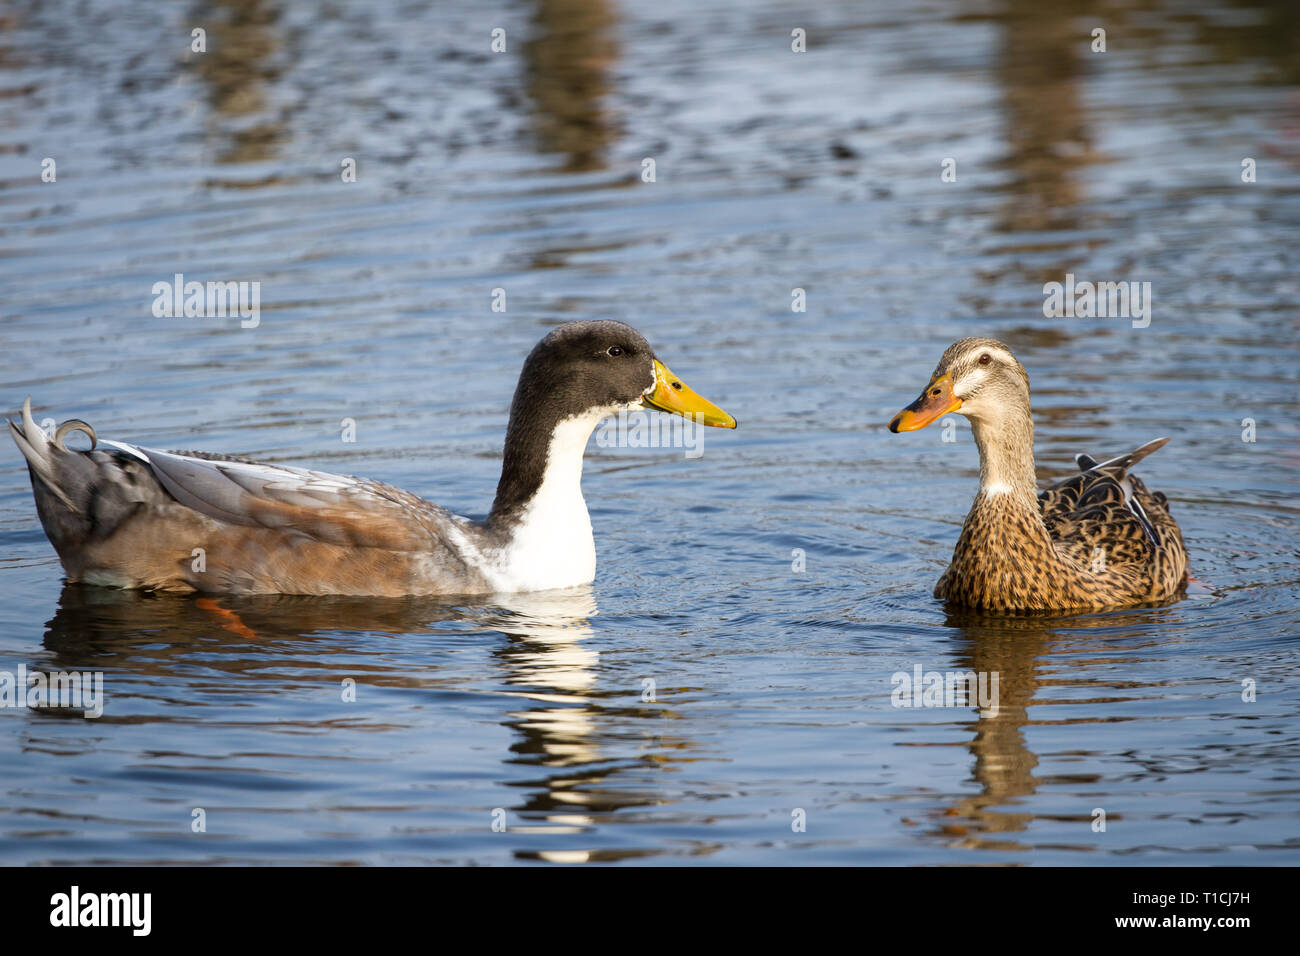 Pair of ducks swimming in the water (Anatidae) Stock Photo